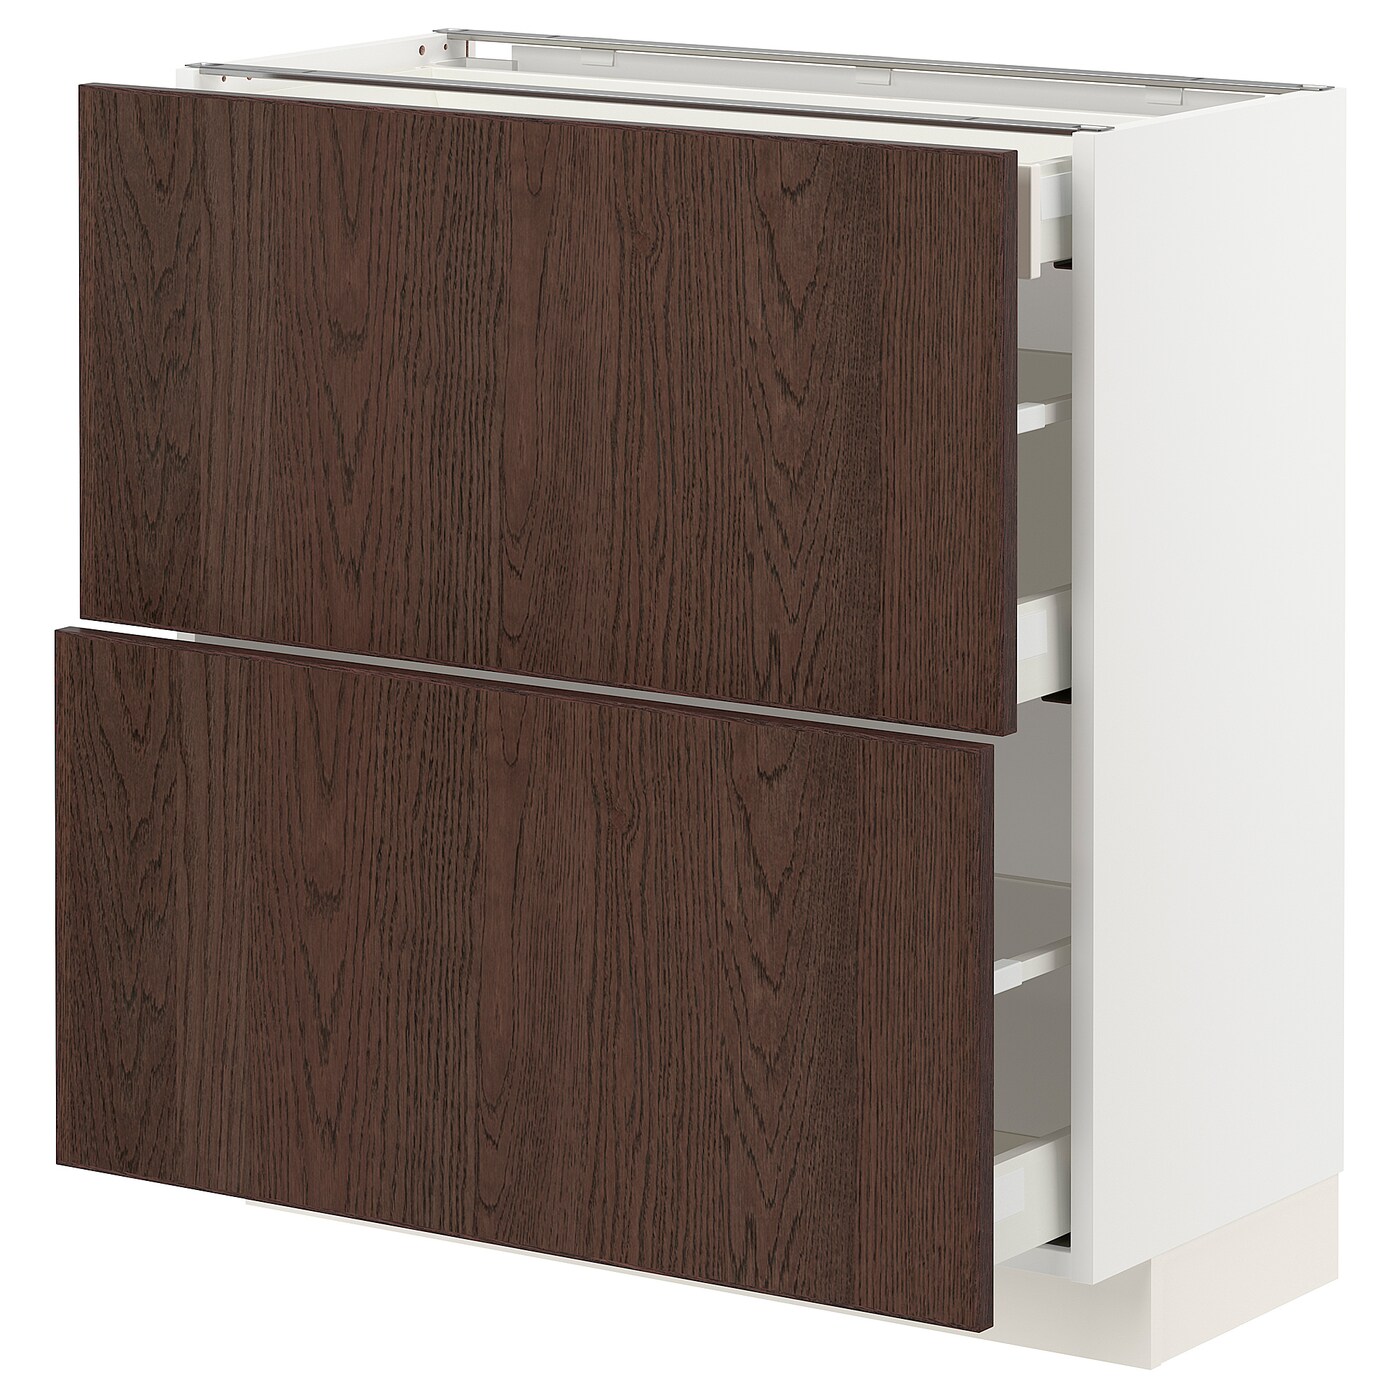 Напольный кухонный шкаф  - IKEA METOD MAXIMERA, 88x39x80см, белый/темно-коричневый, МЕТОД МАКСИМЕРА ИКЕА